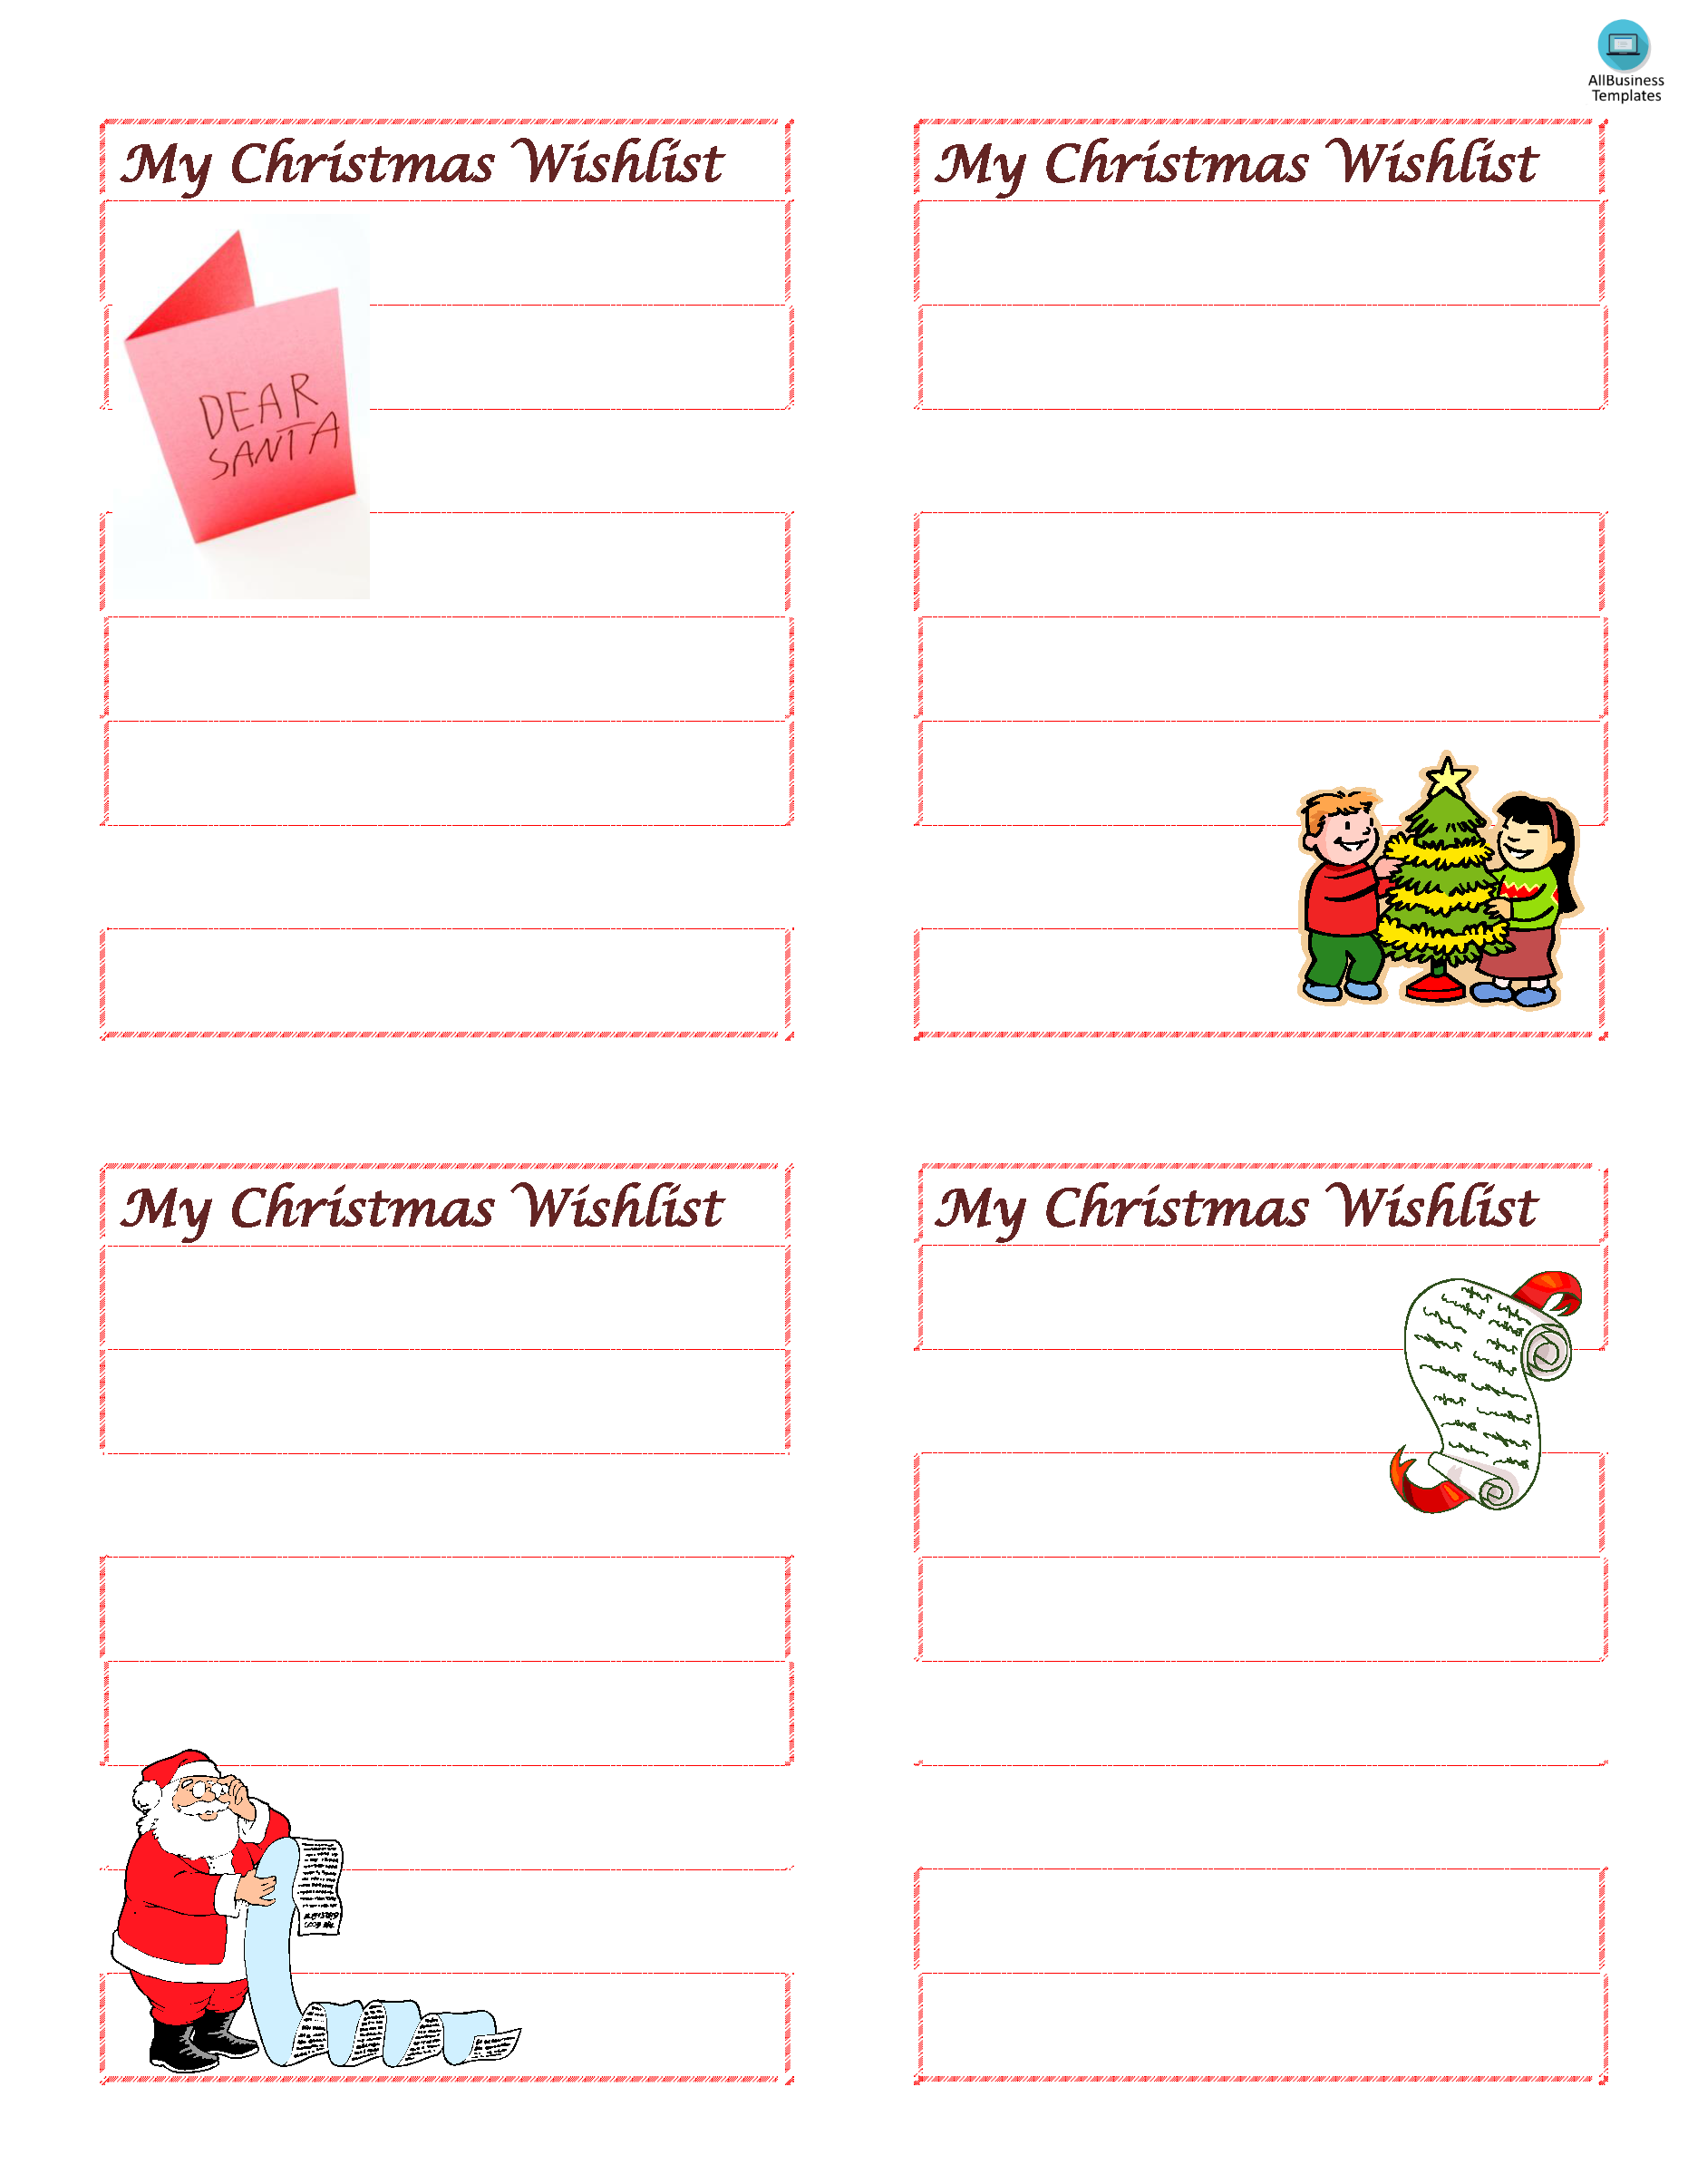 Wish List for Christmas main image